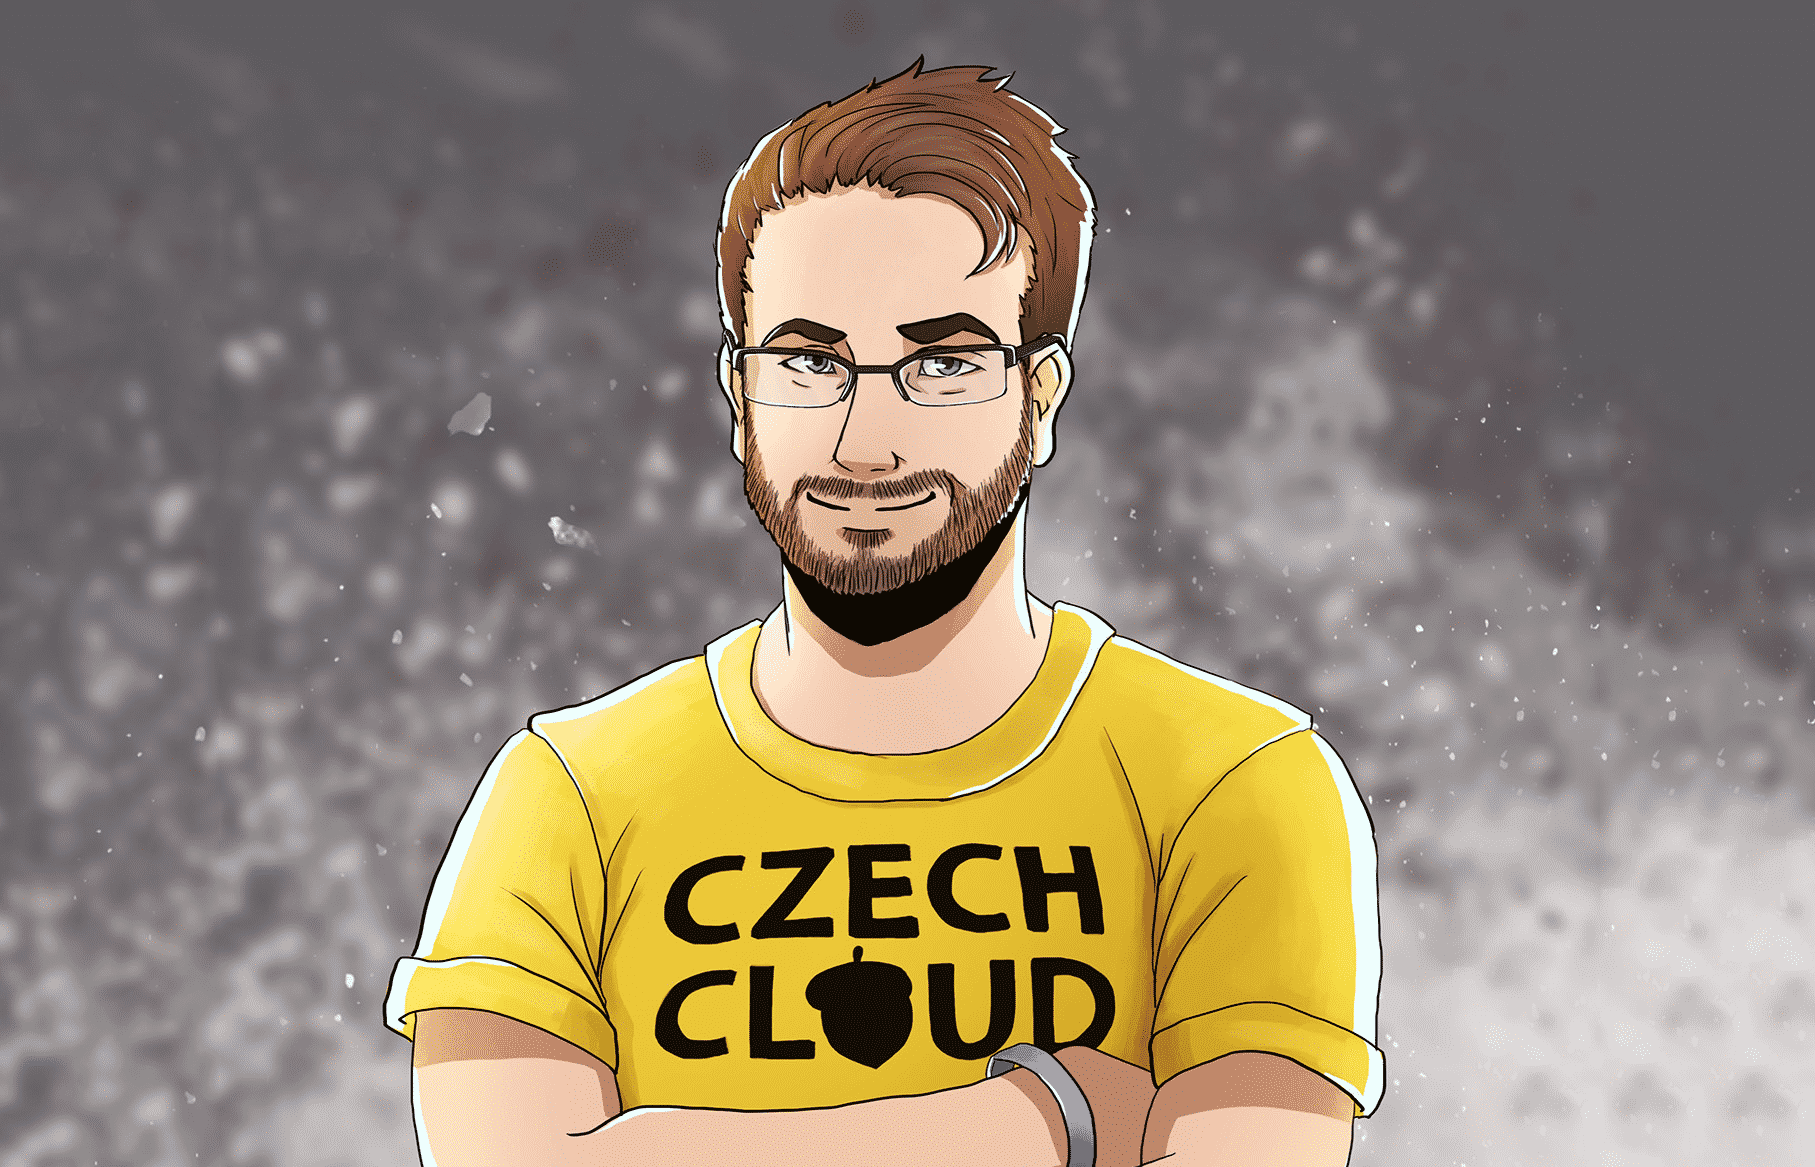 Petr Žalud aka CzechCloud ROZHOVOR